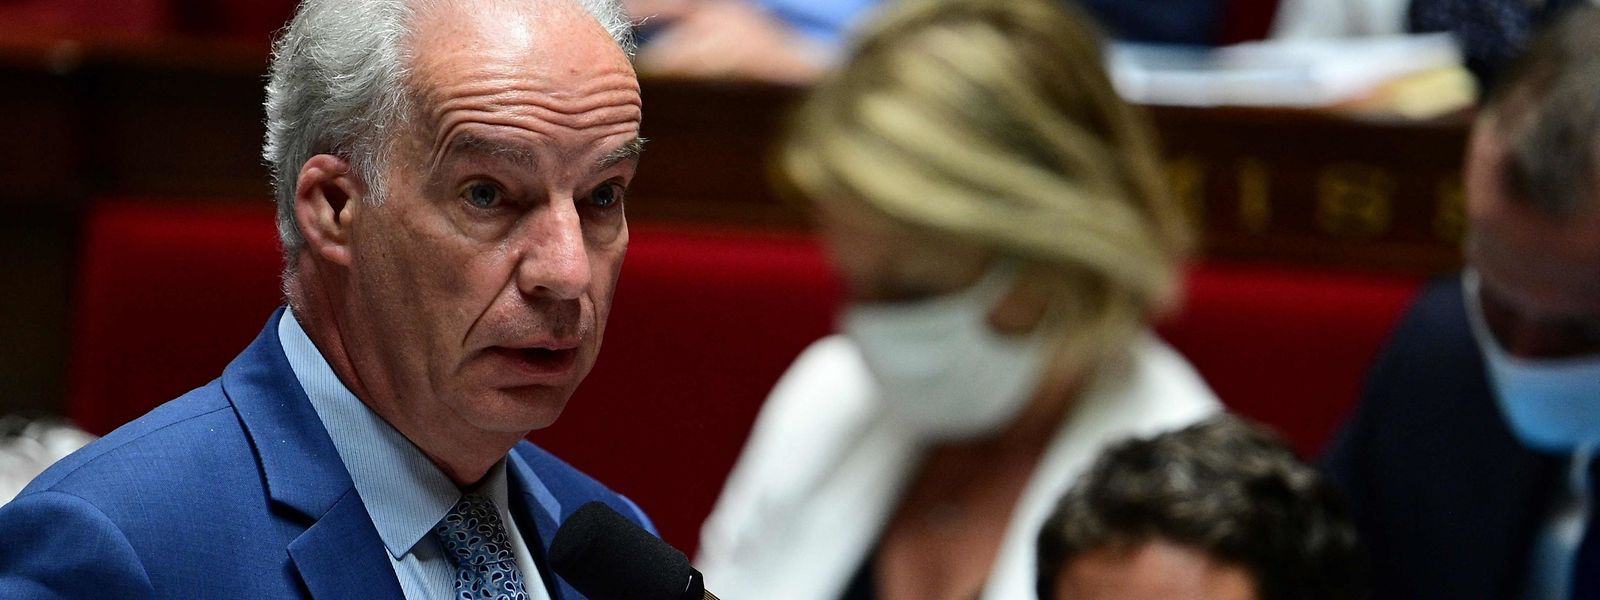 Alain Griset apresentou a sua demissão como membro do Governo ao Presidente Emmanuel Macron e ao primeiro-ministro Jean Castex.